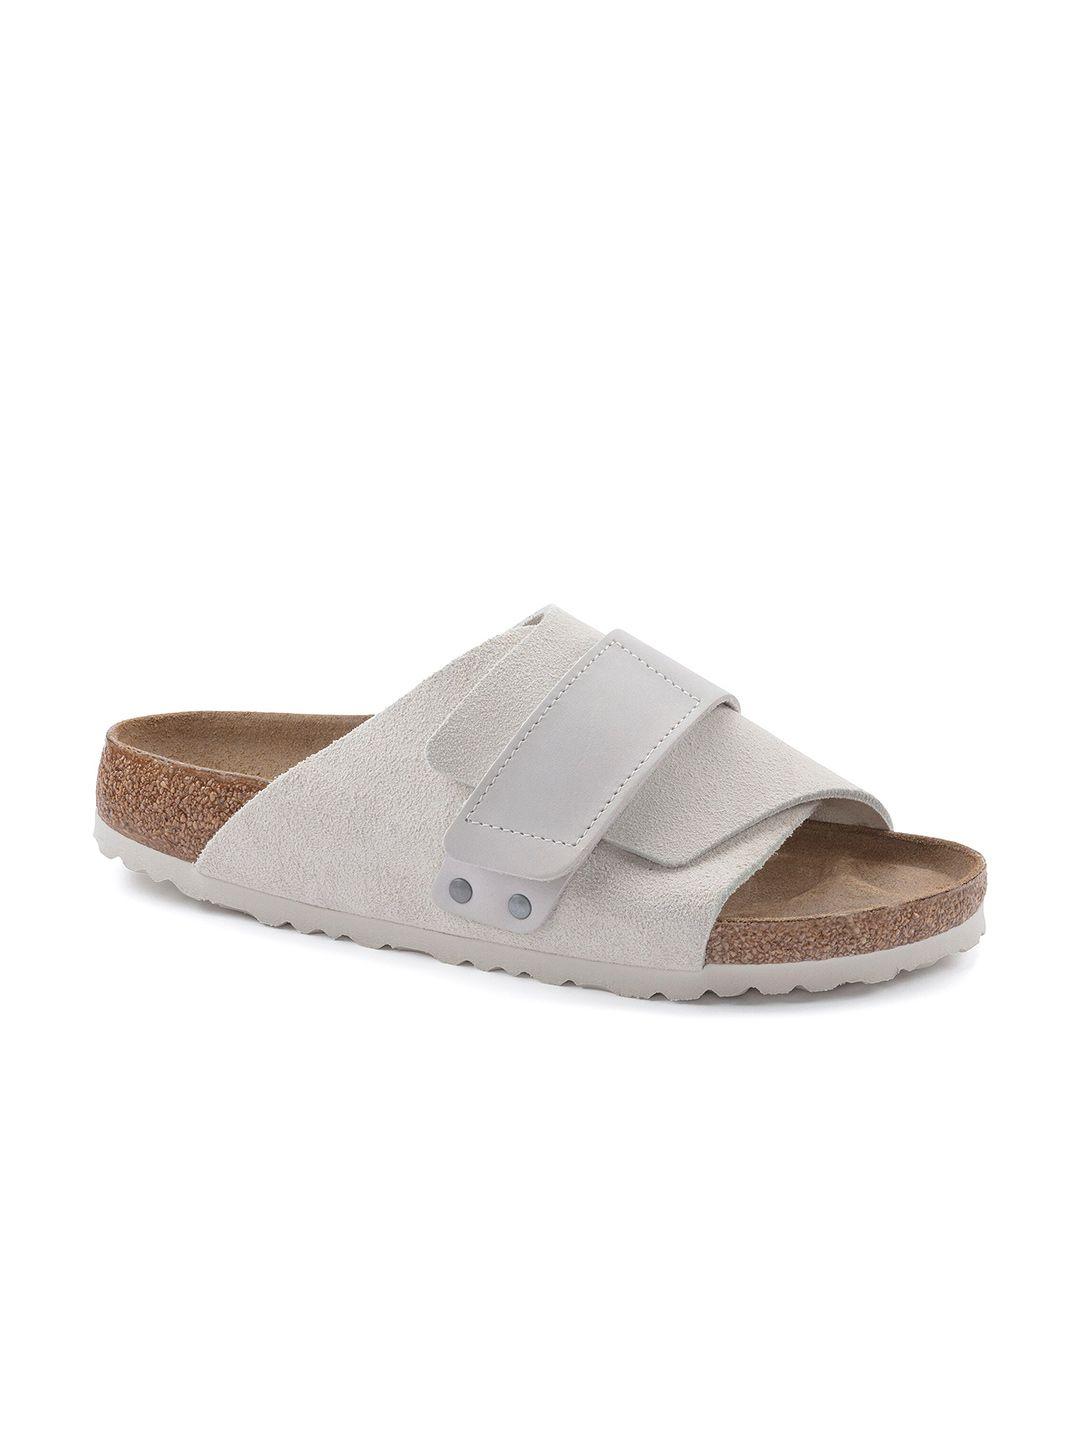 birkenstock kyoto regular width one-strap comfort sandals